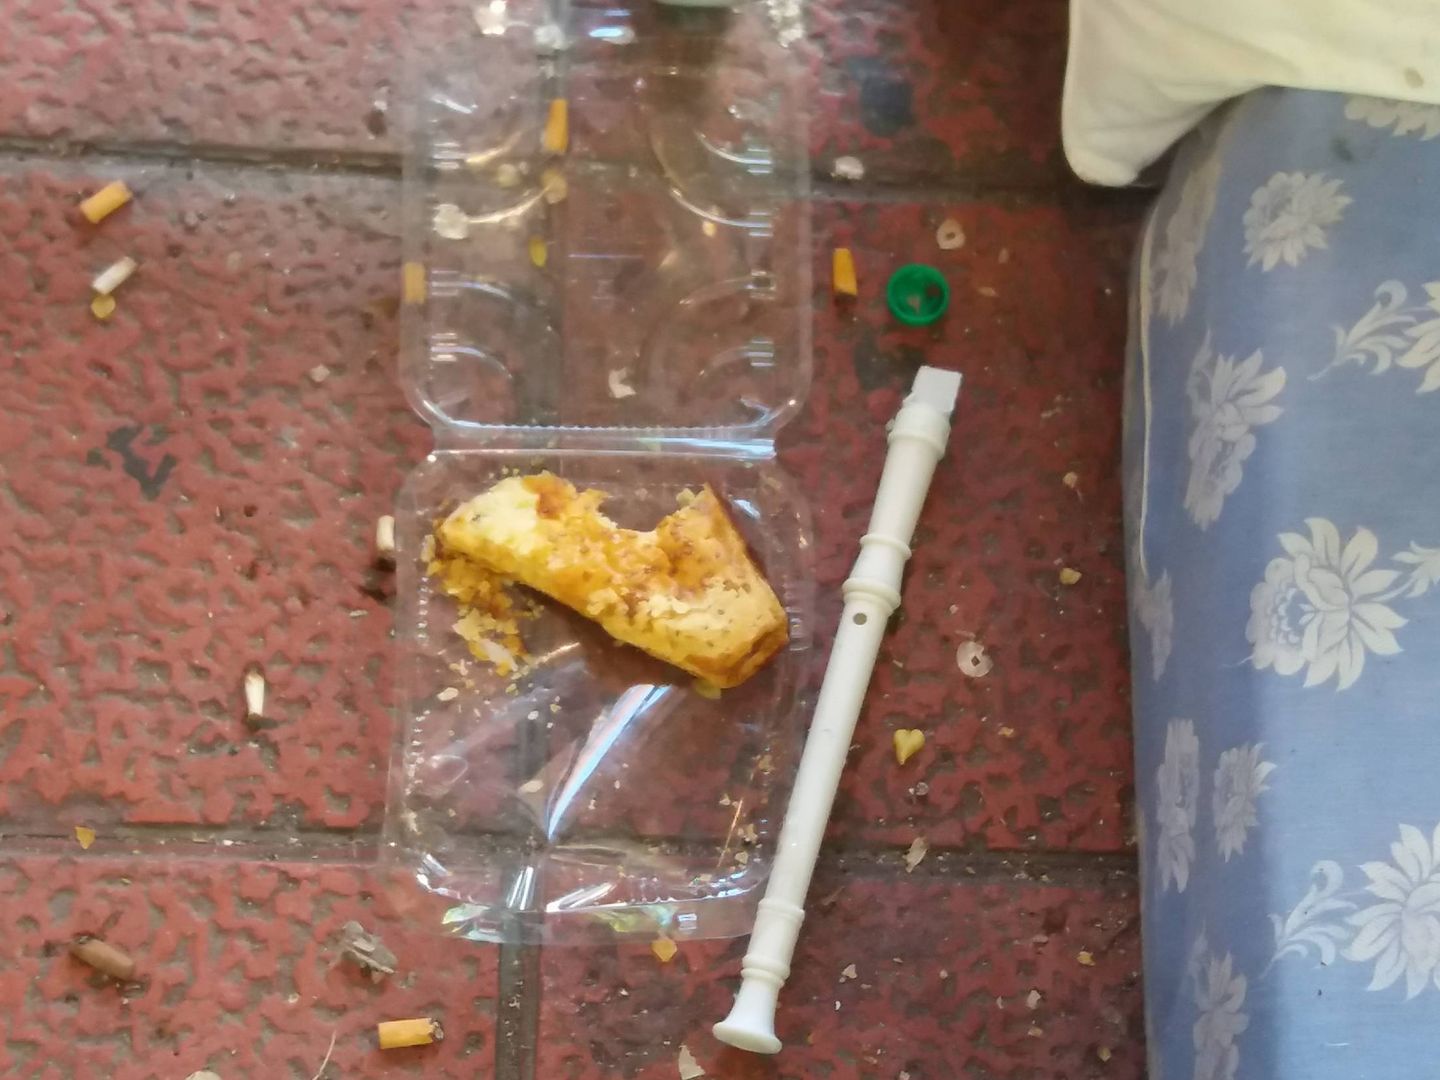 Restos de comida guardada en una bandeja de plástico y una flauta. (Á. Caballero)